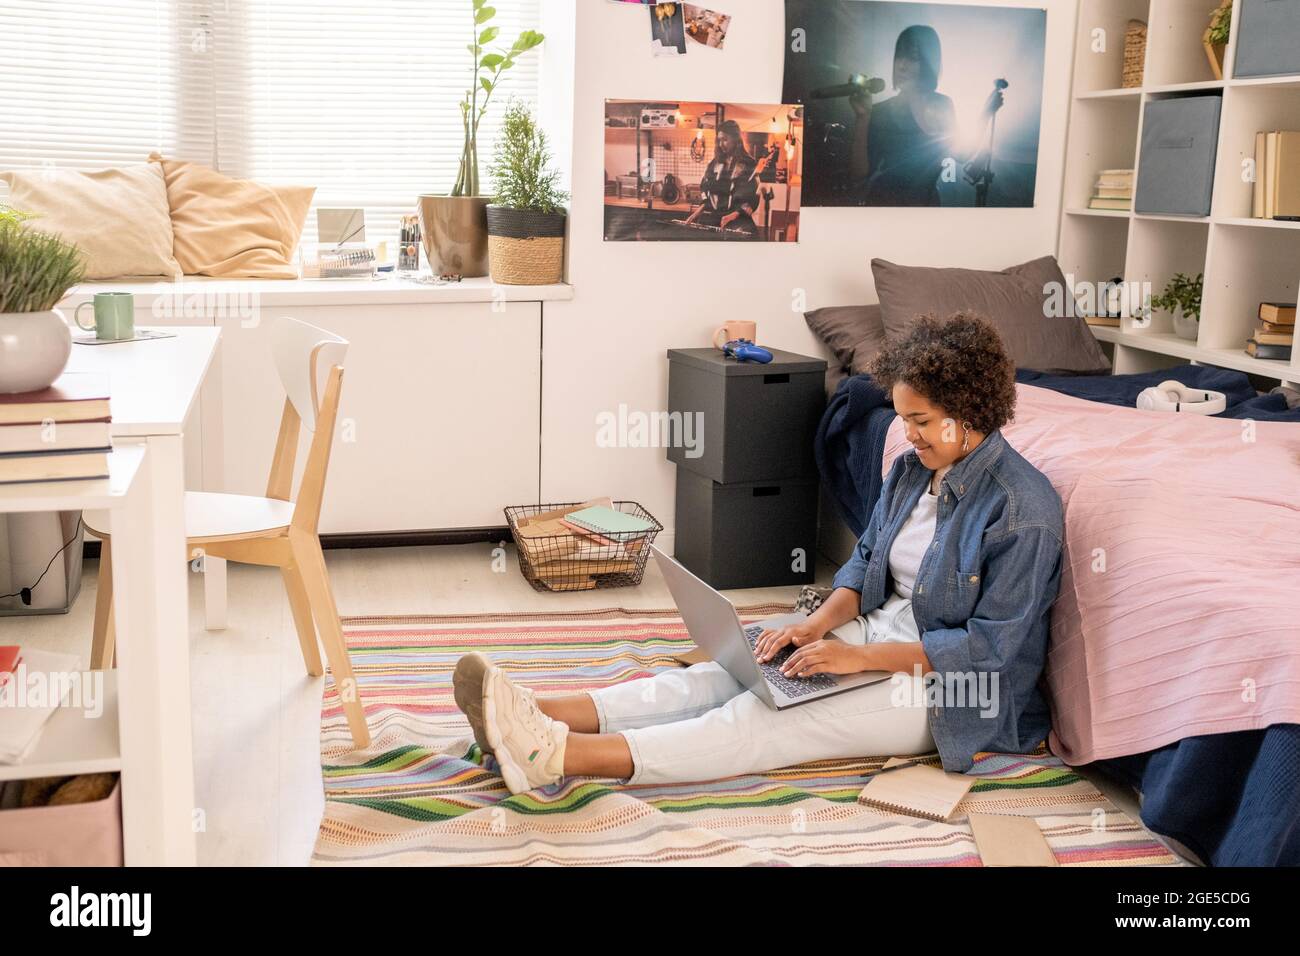 Grazioso studente adolescente con computer portatile che esegue il test online mentre si siede a letto sul pavimento Foto Stock